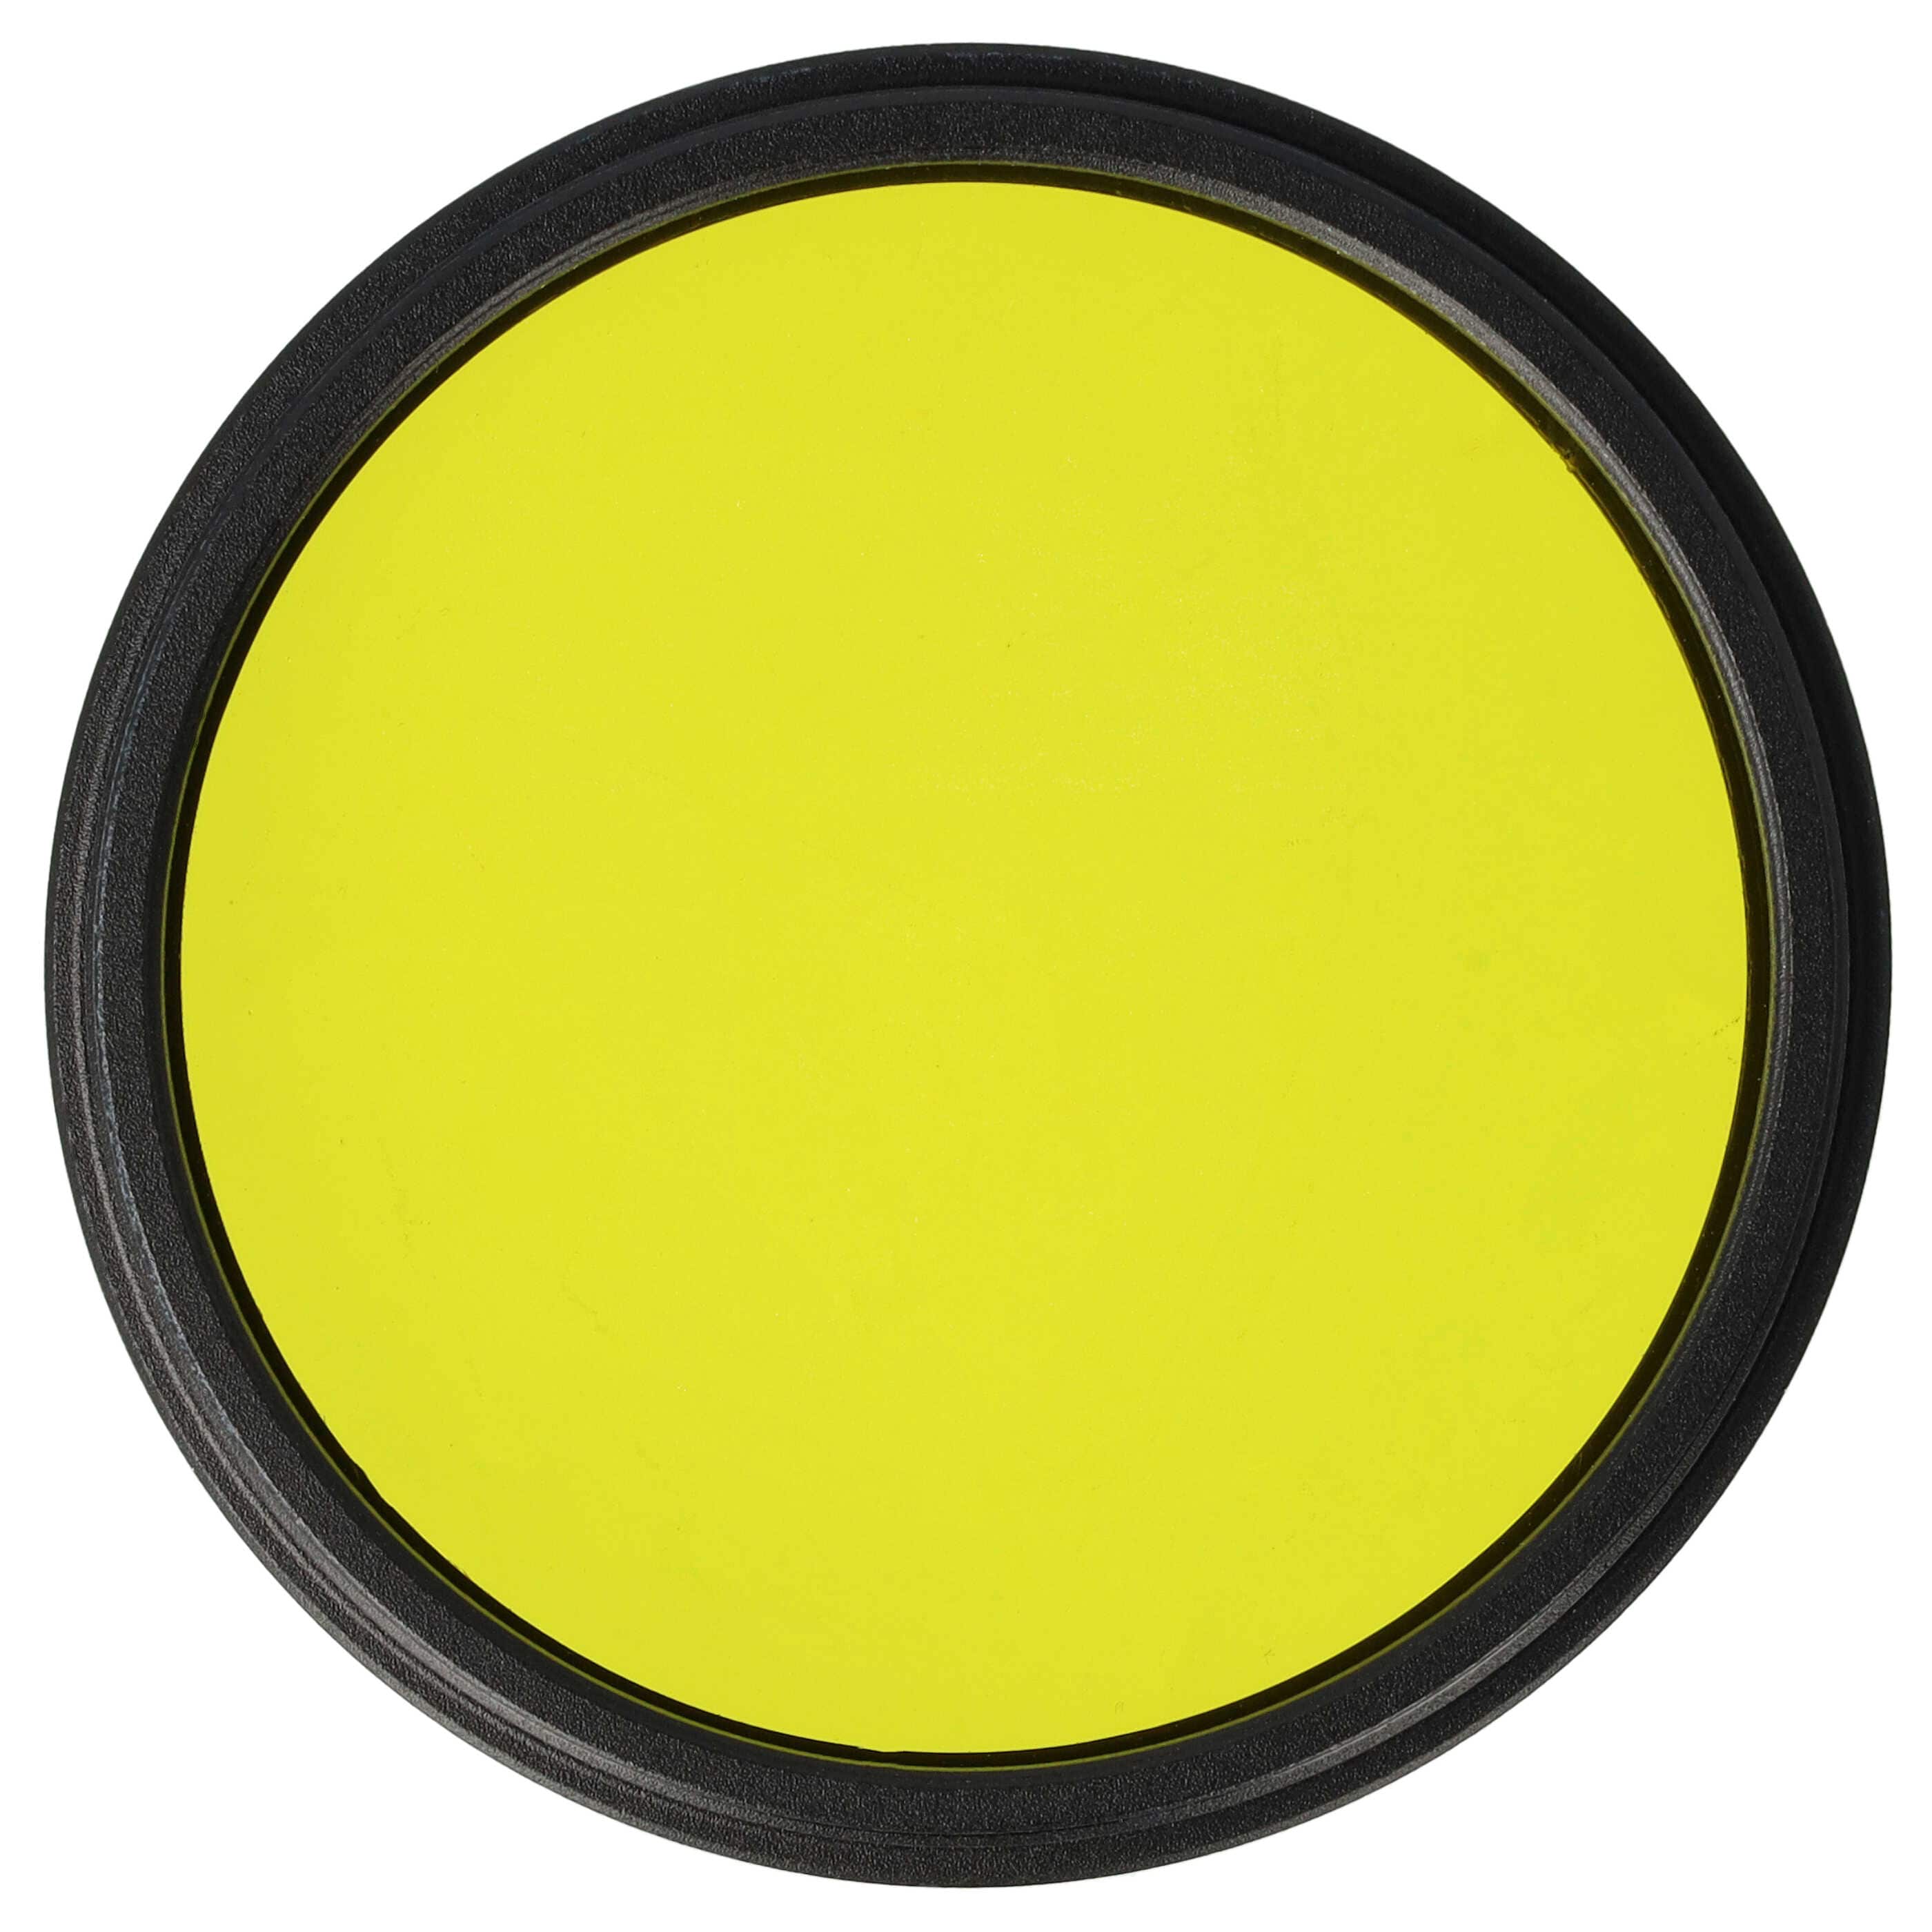 Filtro de color para objetivo de cámara con rosca de filtro de 52 mm - Filtro amarillo